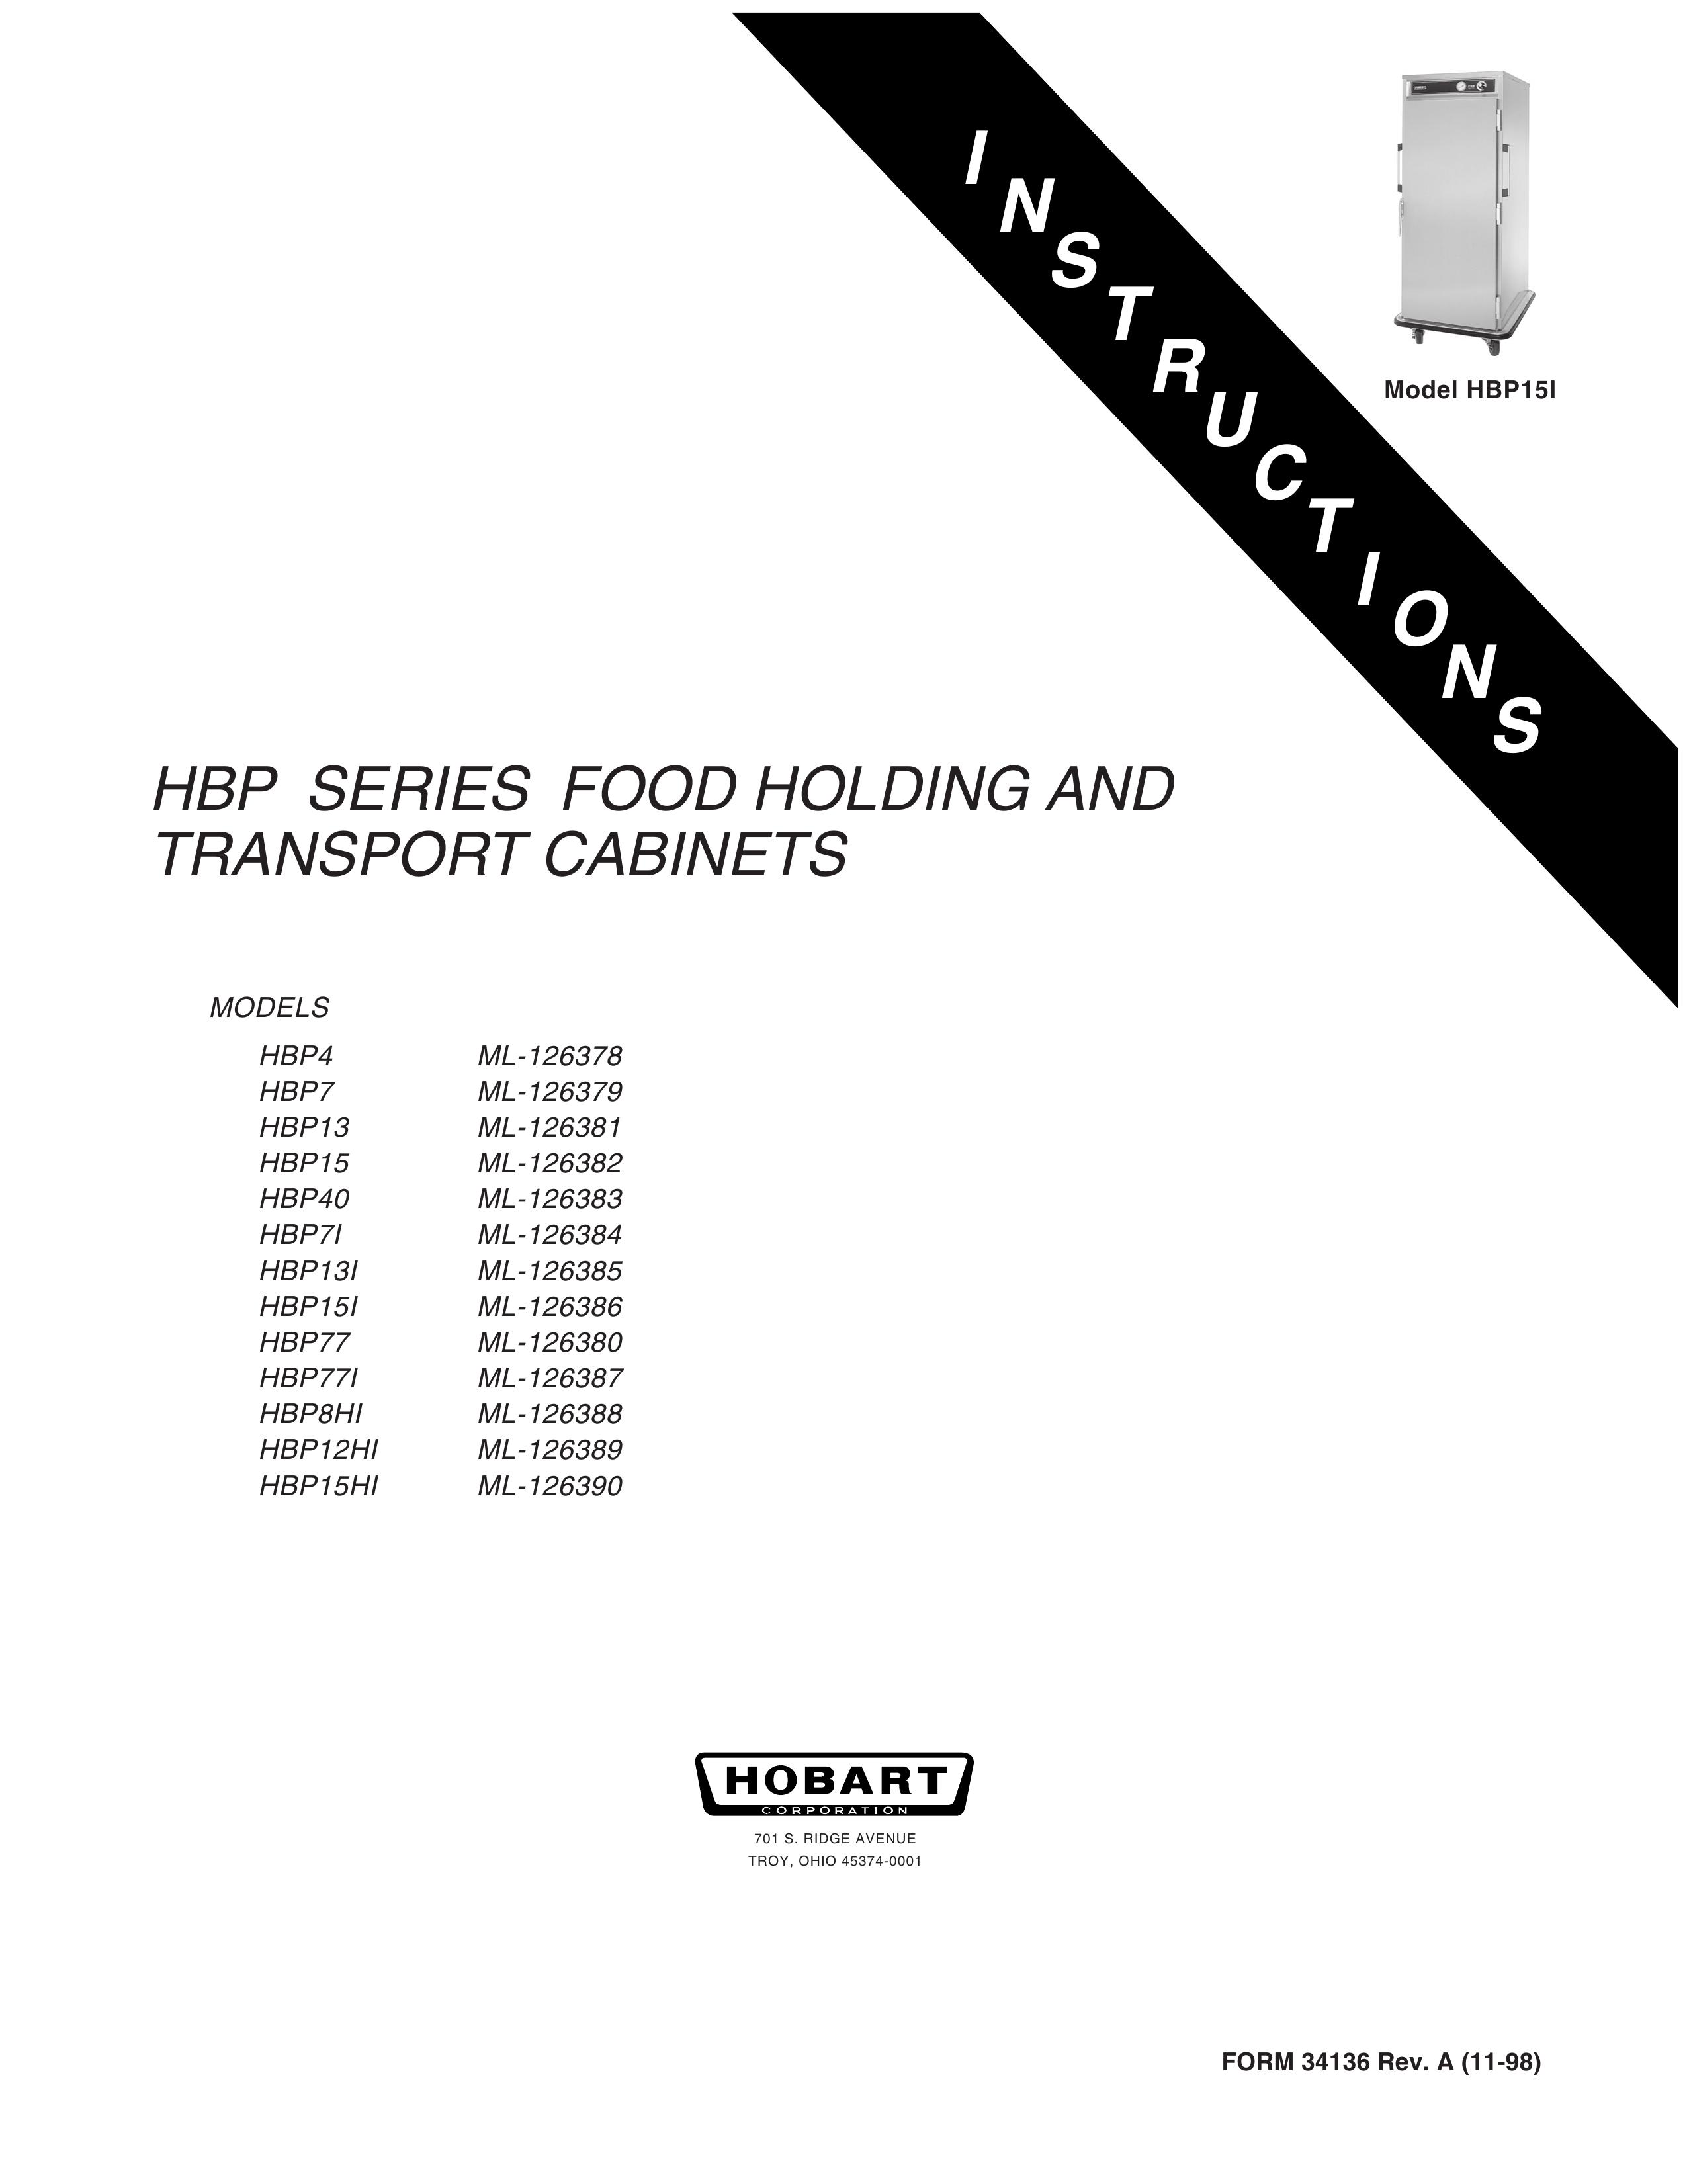 Hobart HBP12HI ML-126389 Outdoor Storage User Manual